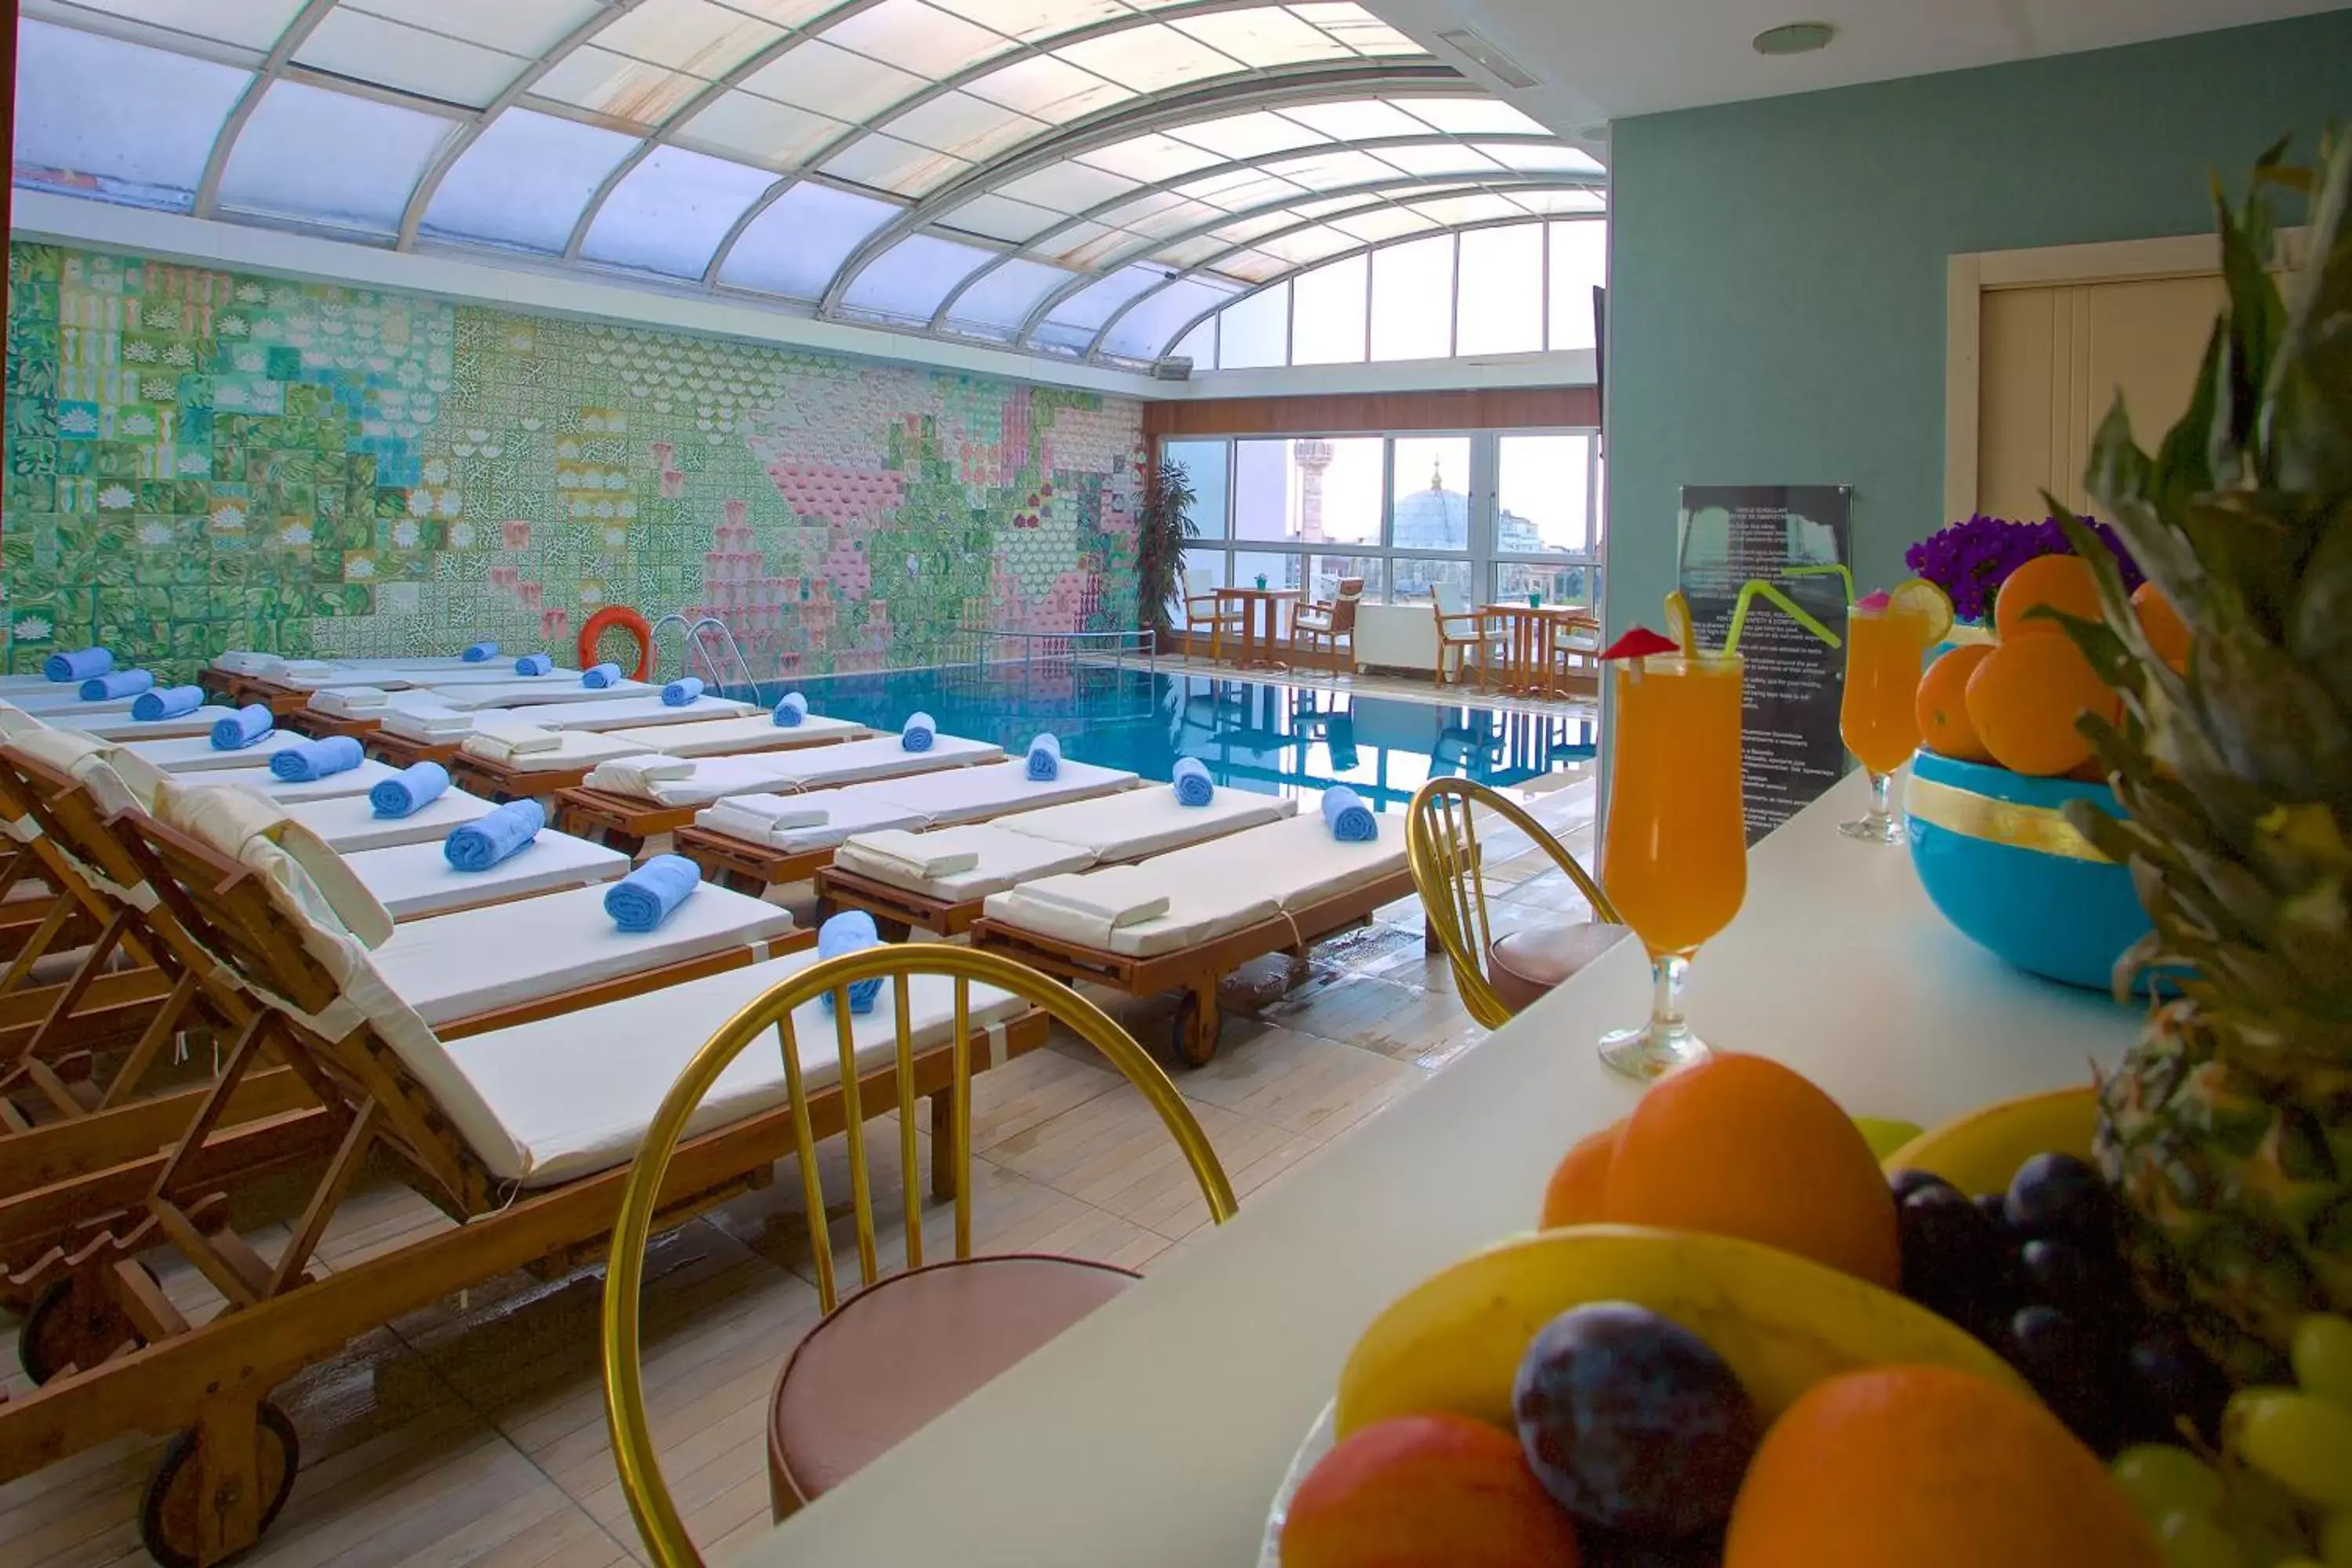 Swimming Pool in Zagreb Hotel